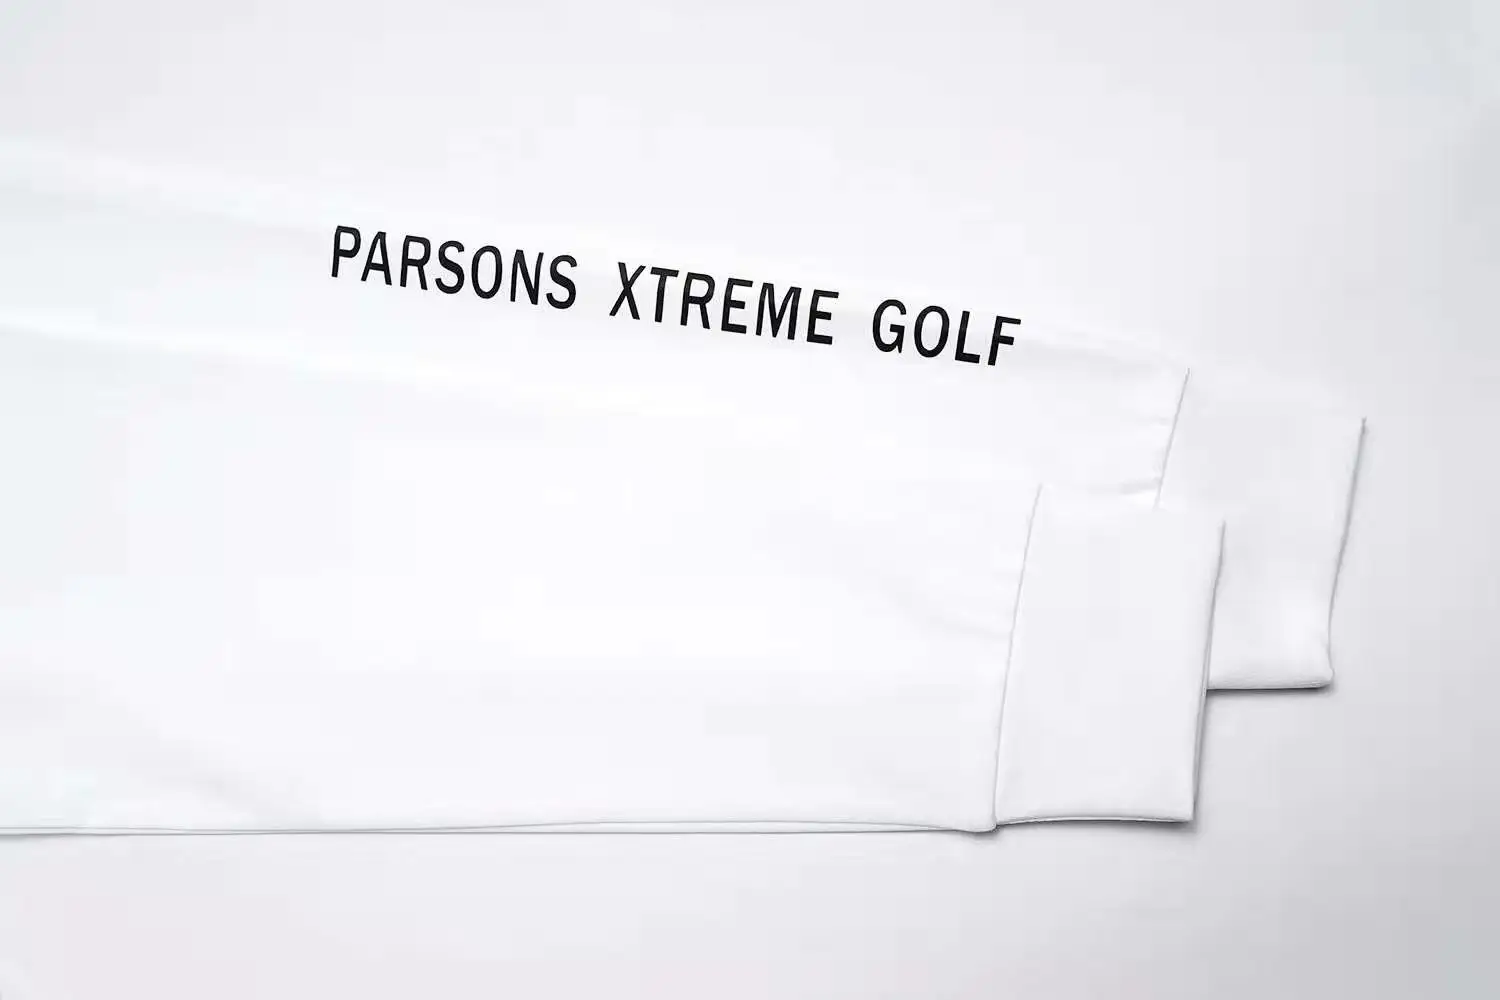 ZMen спортивная одежда с длинными рукавами футболка для гольфа 3 цвета одежда для гольфа s-xxl выбрать Досуг Одежда для гольфа Бесплатная